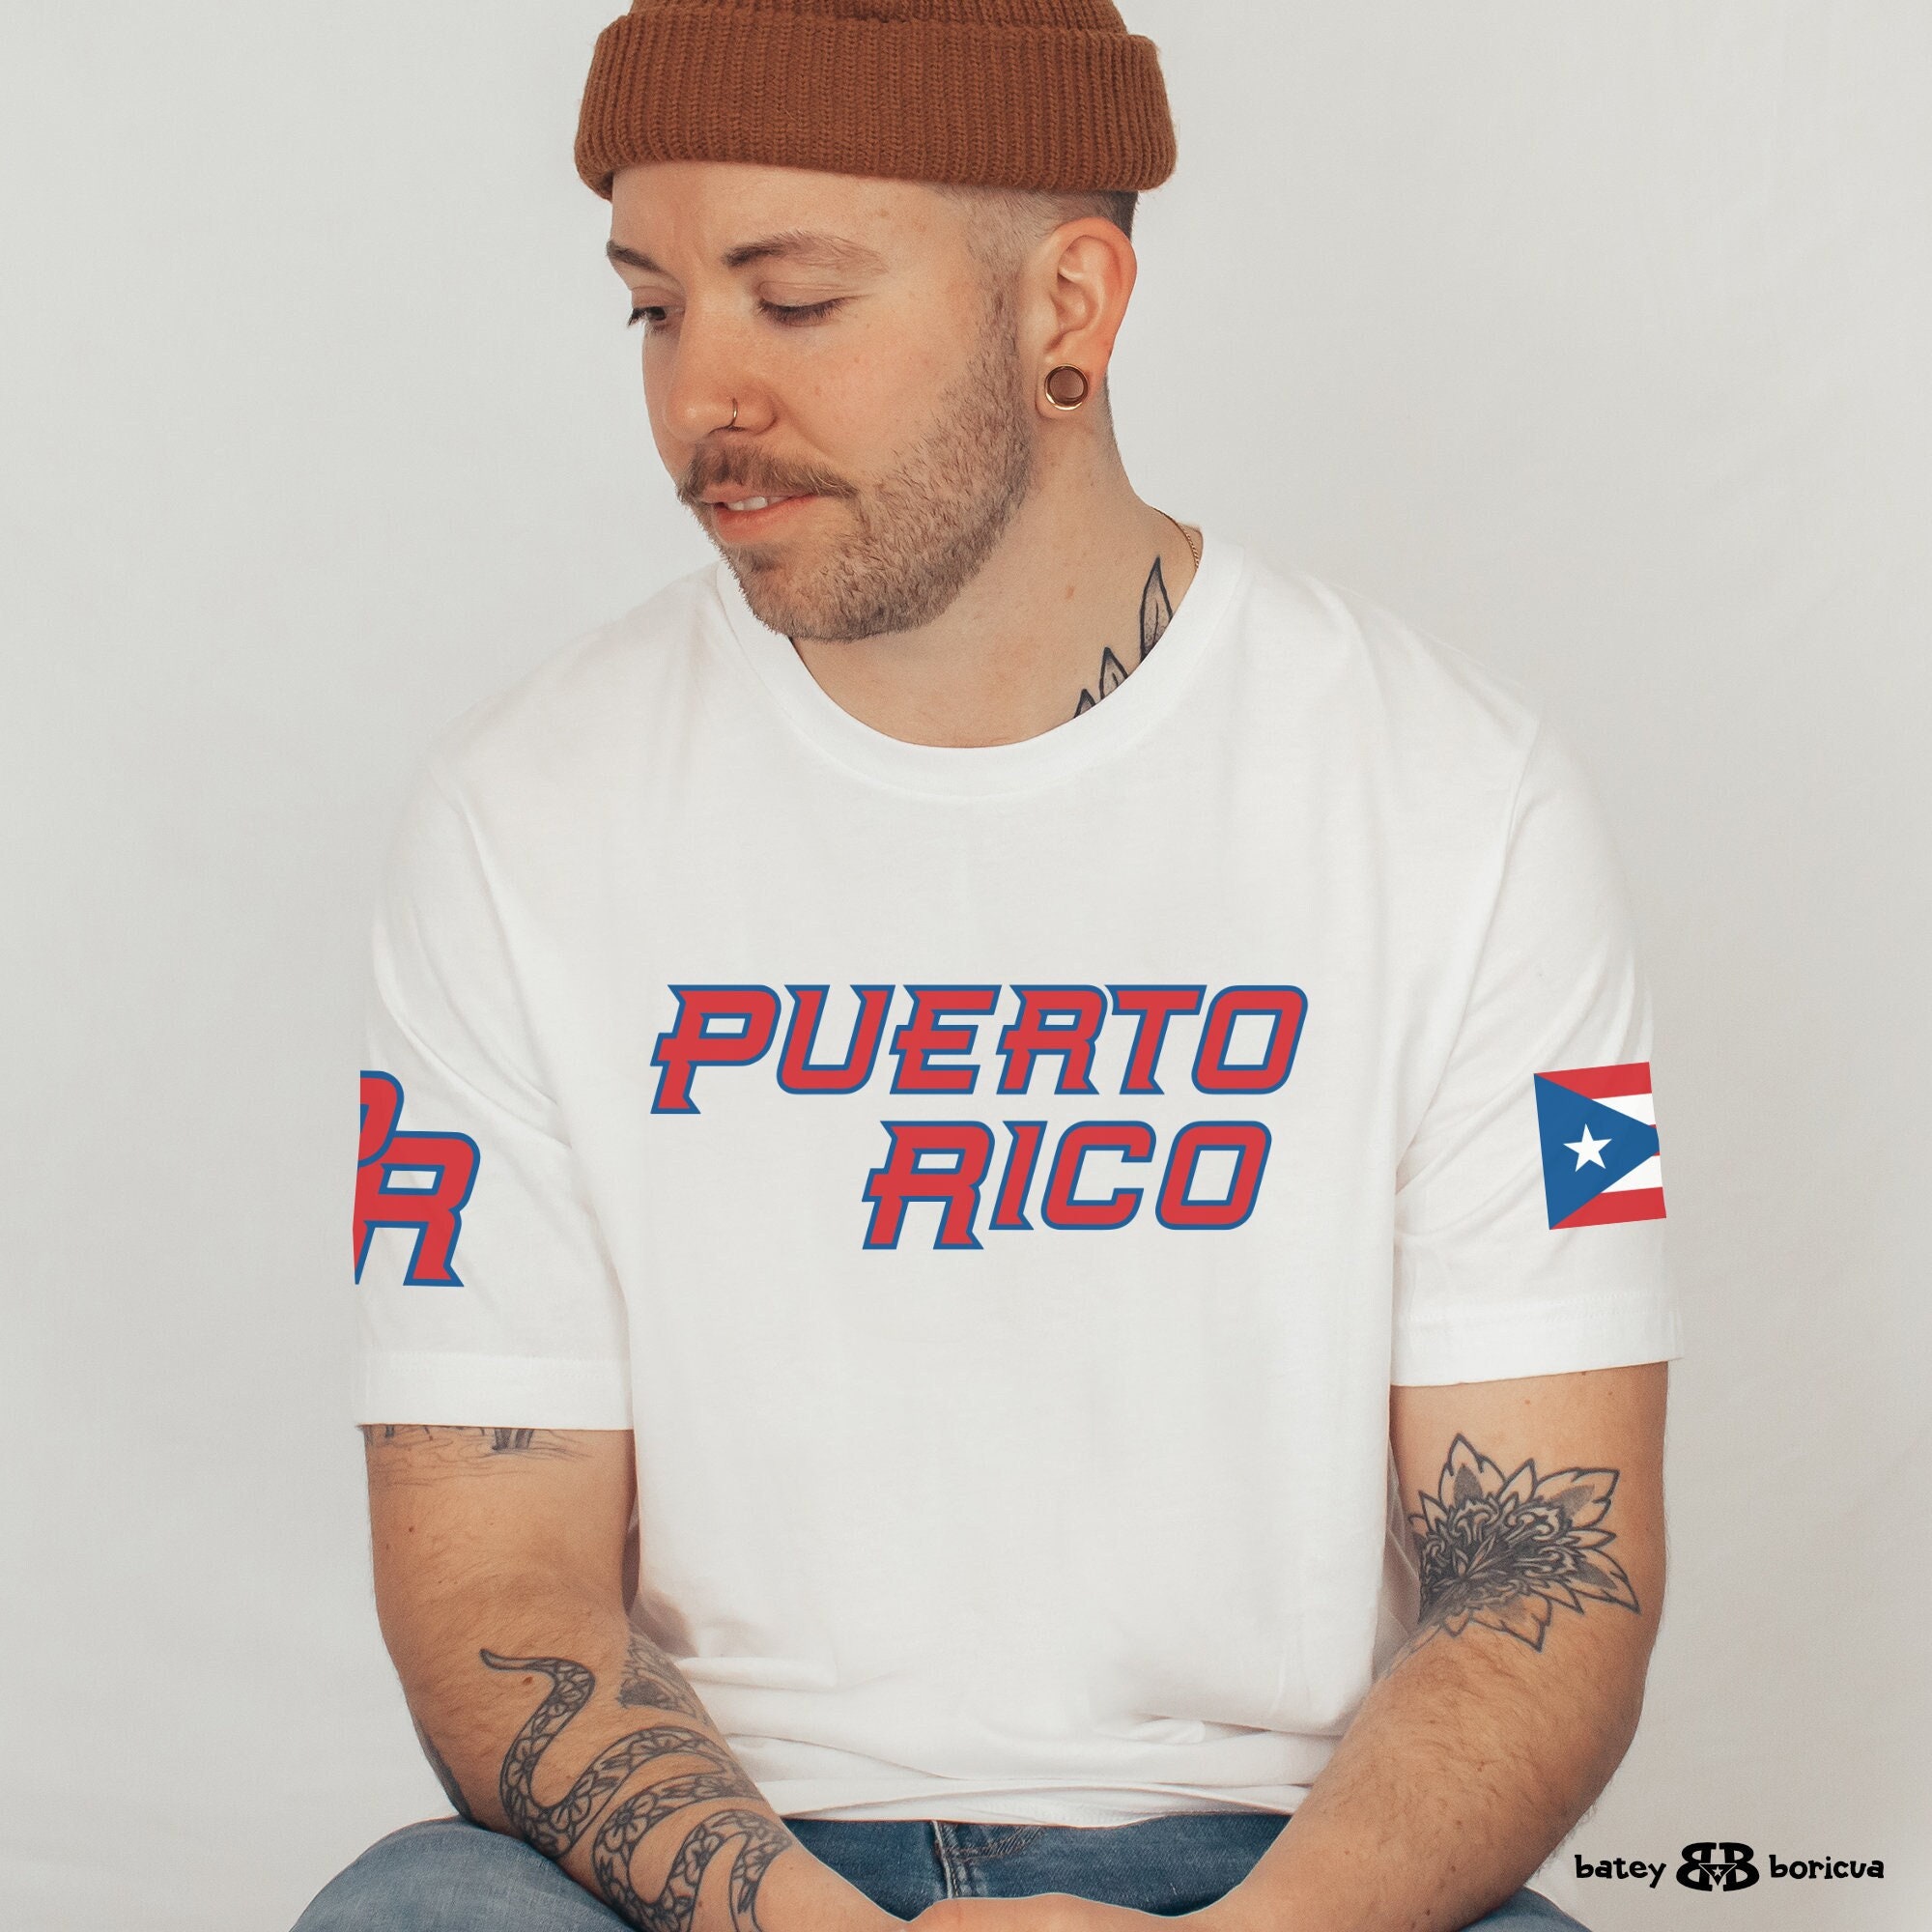 Camiseta de boxeo de Puerto Rico Humacao Camisas de Puerto Rico